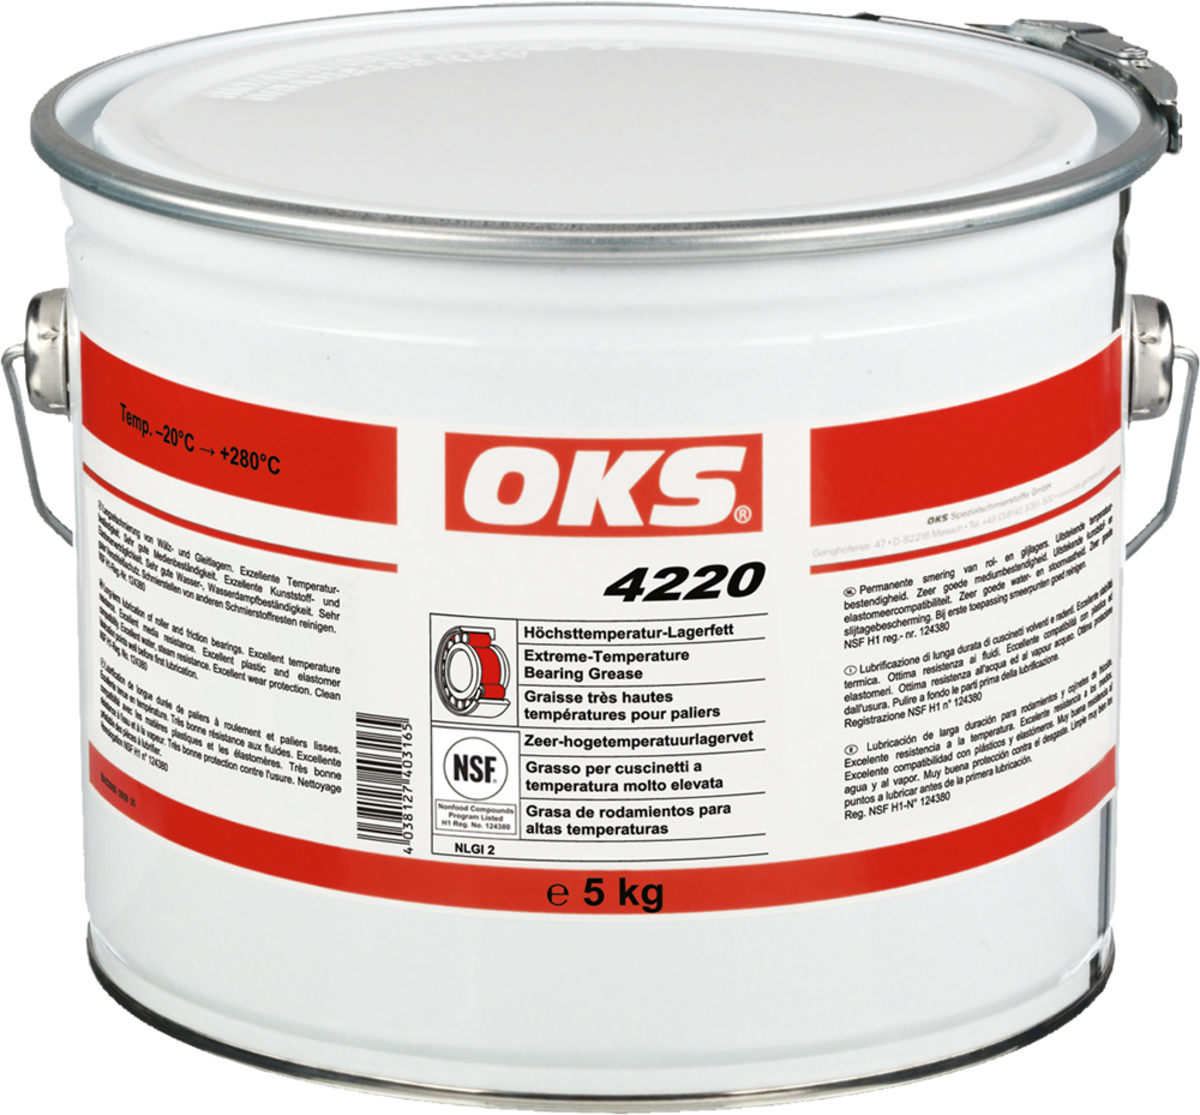 OKS 4220 Höchsttemperatur-Lagerfett, 5 kg Hobbock, Wälz-/Gleitlagerfette, Fette, Chemisch-Technische Produkte, Produkte